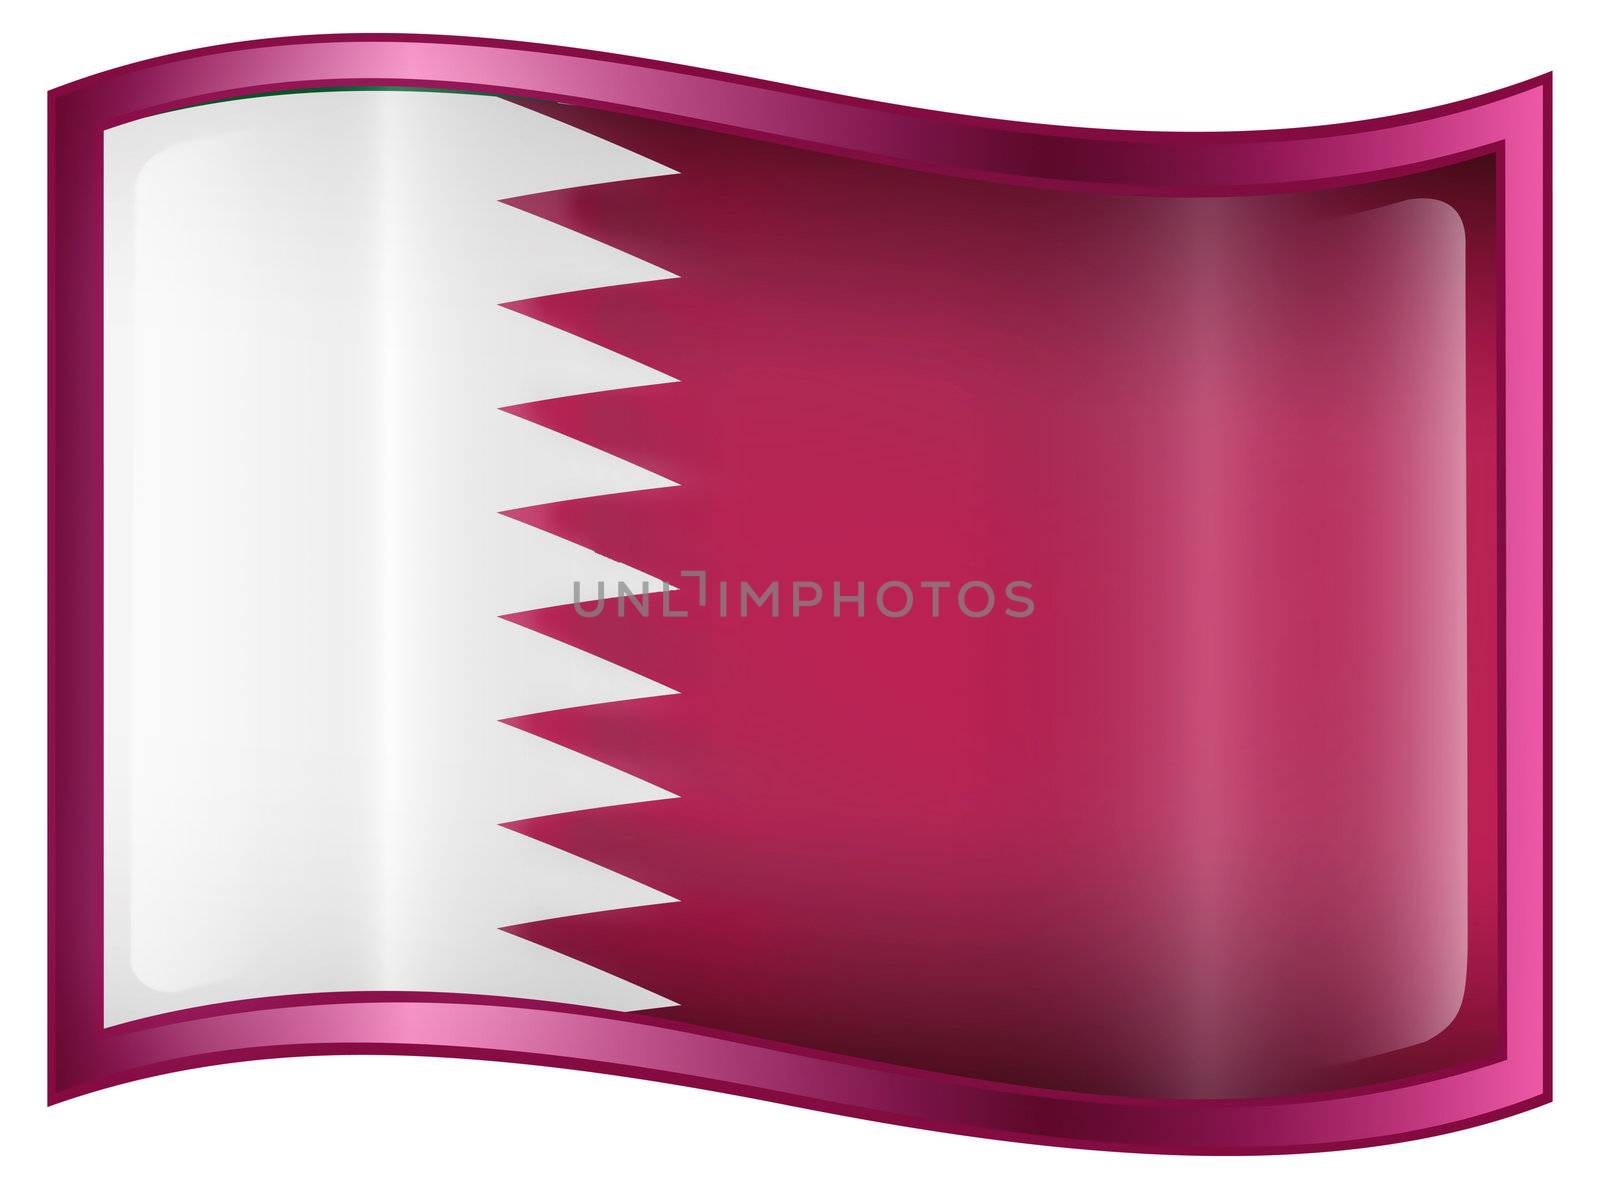 Qatar flag icon, isolated on white background